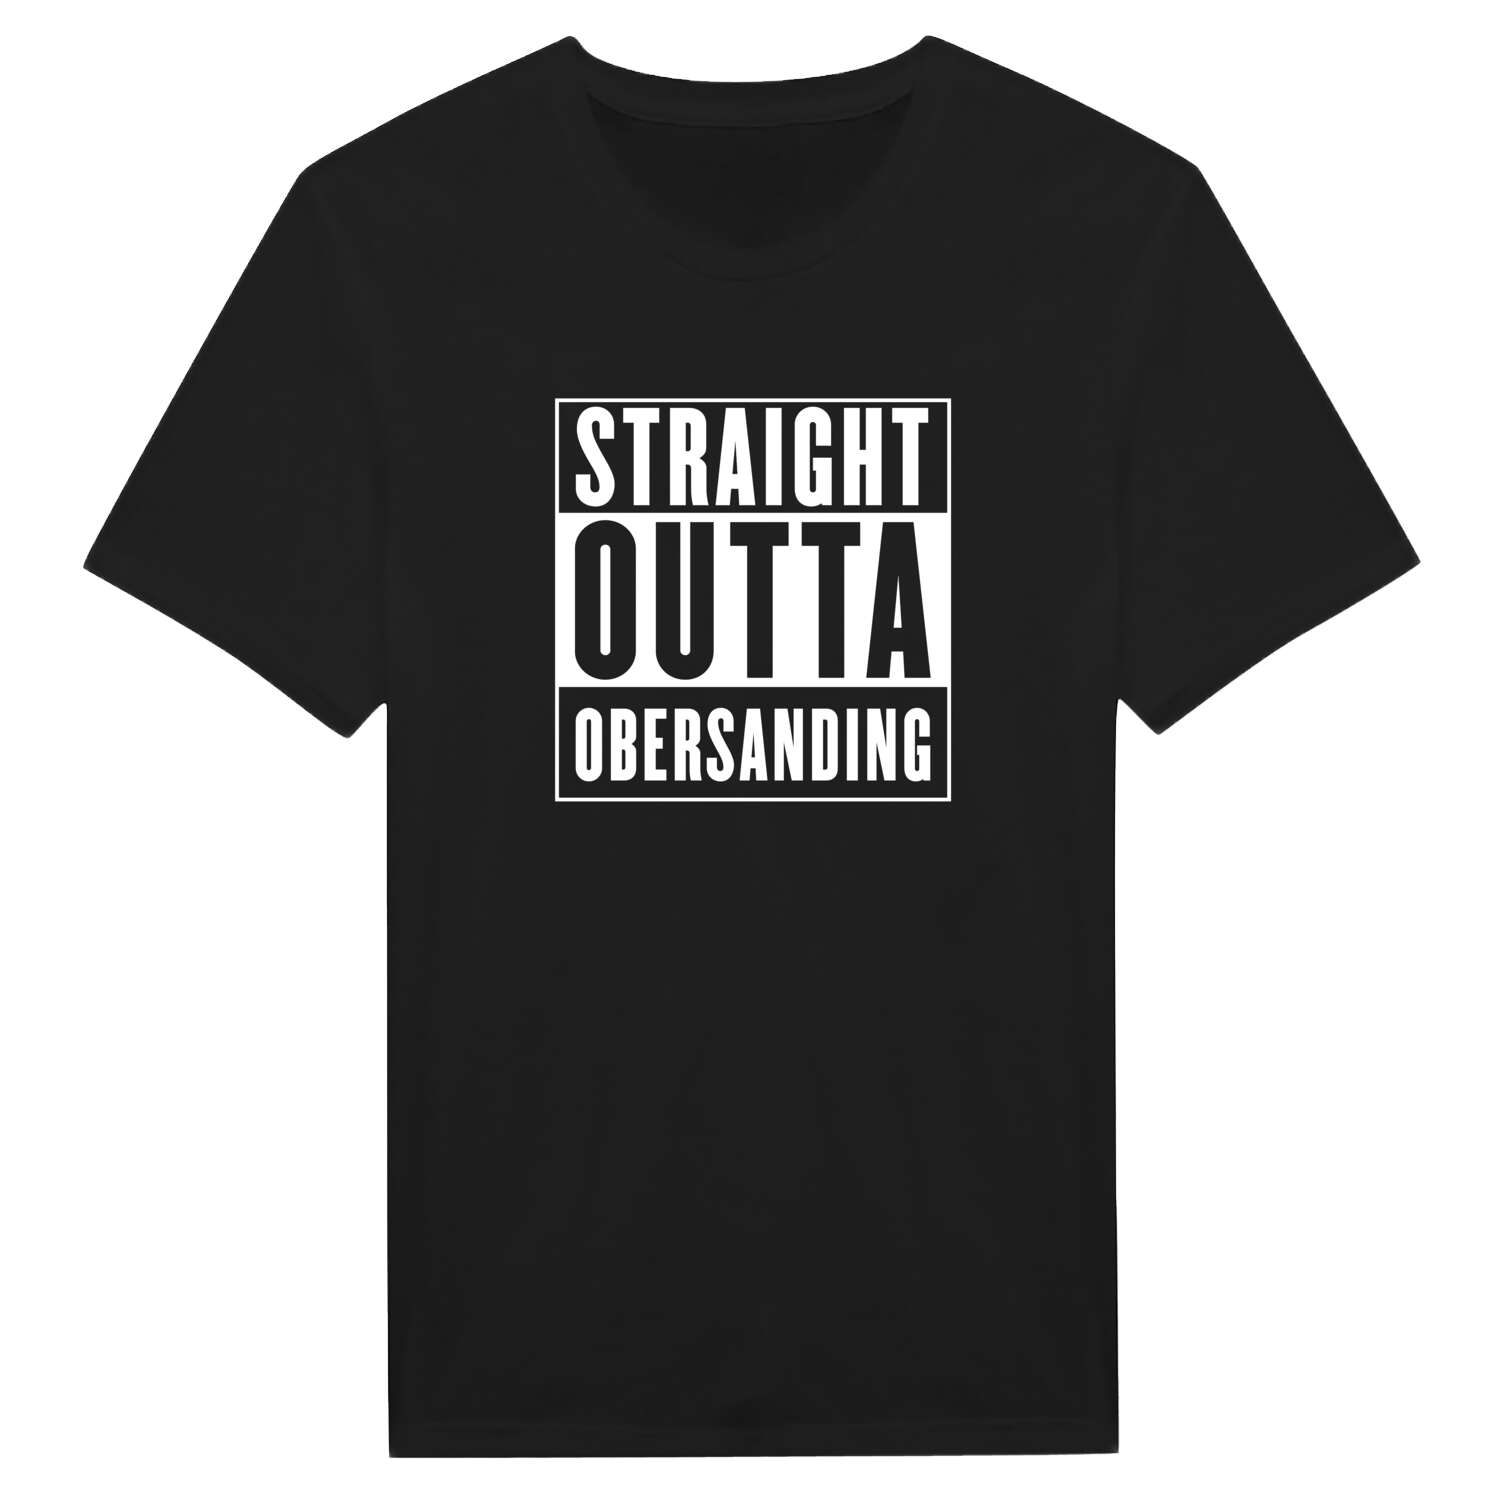 Obersanding T-Shirt »Straight Outta«